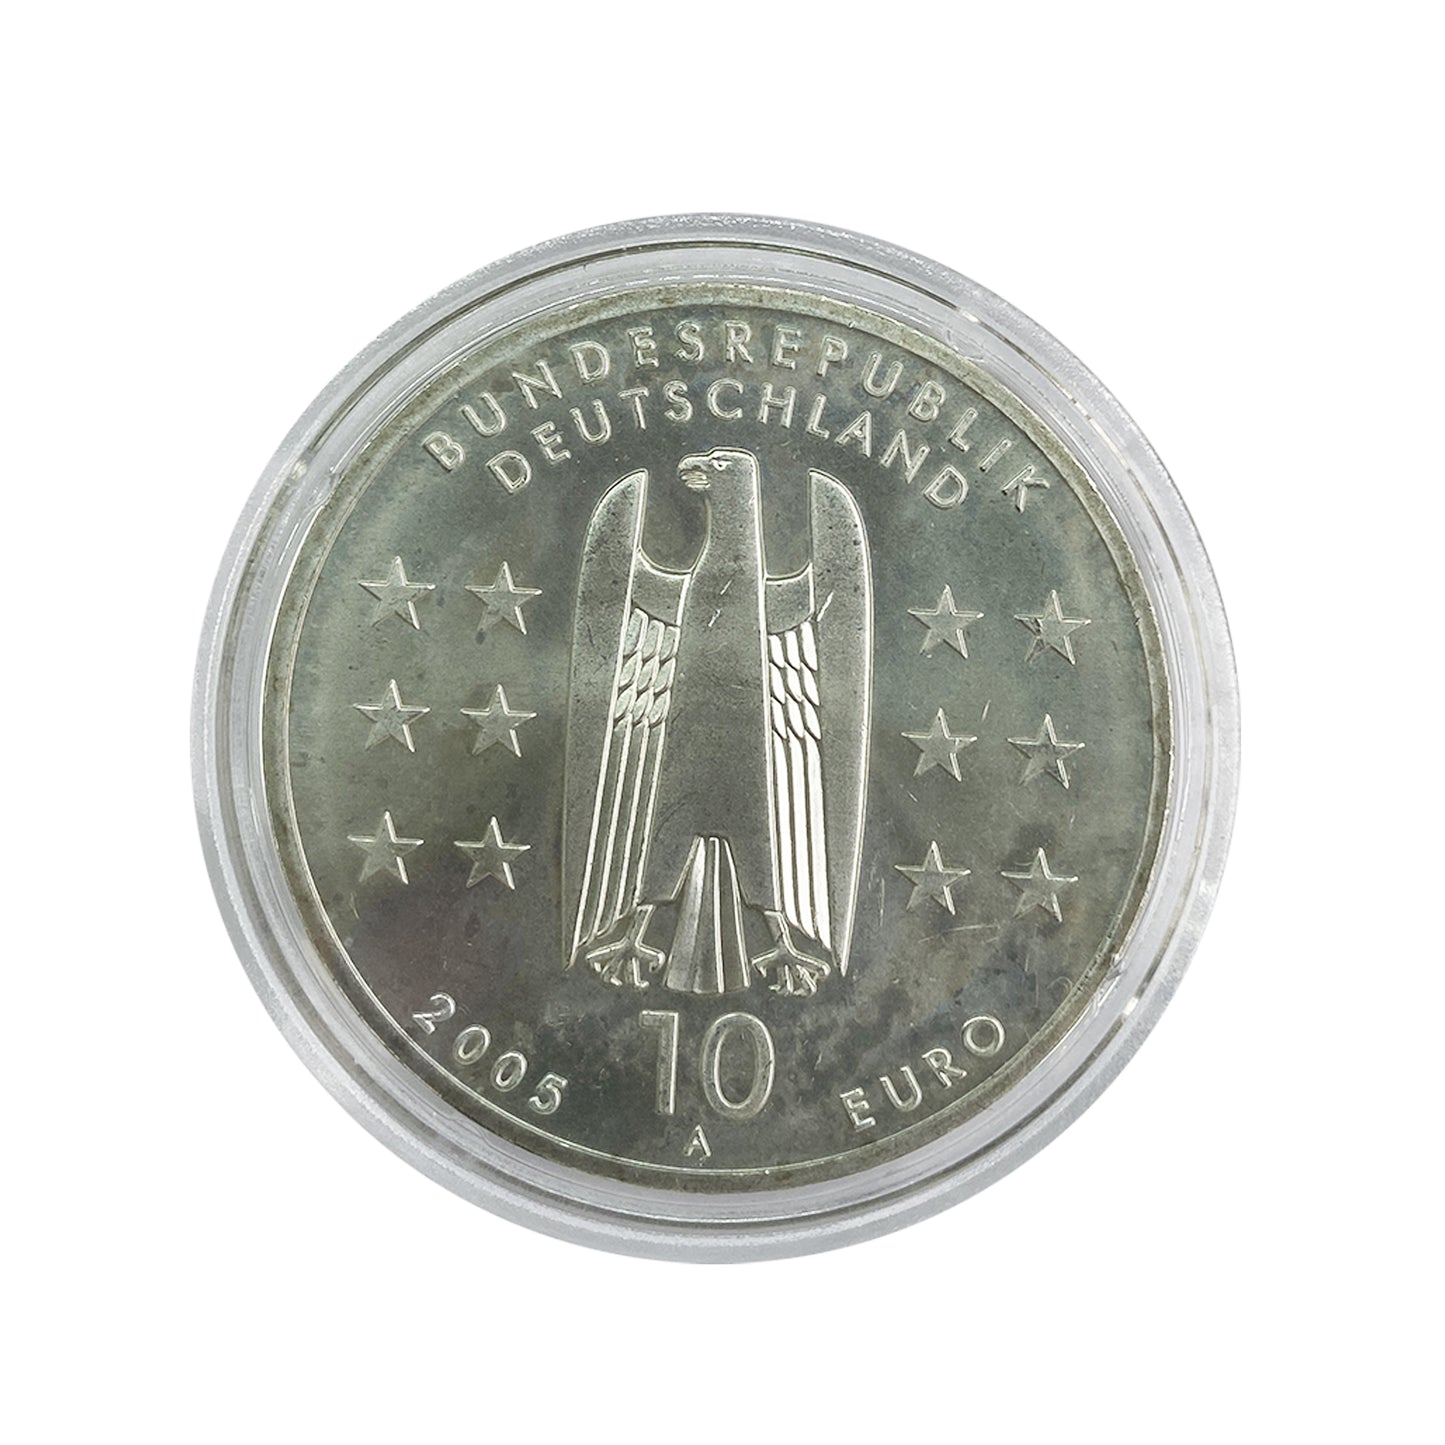 Alemania - Moneda 10 euros plata 2005 - 1200 años de Magdeburgo